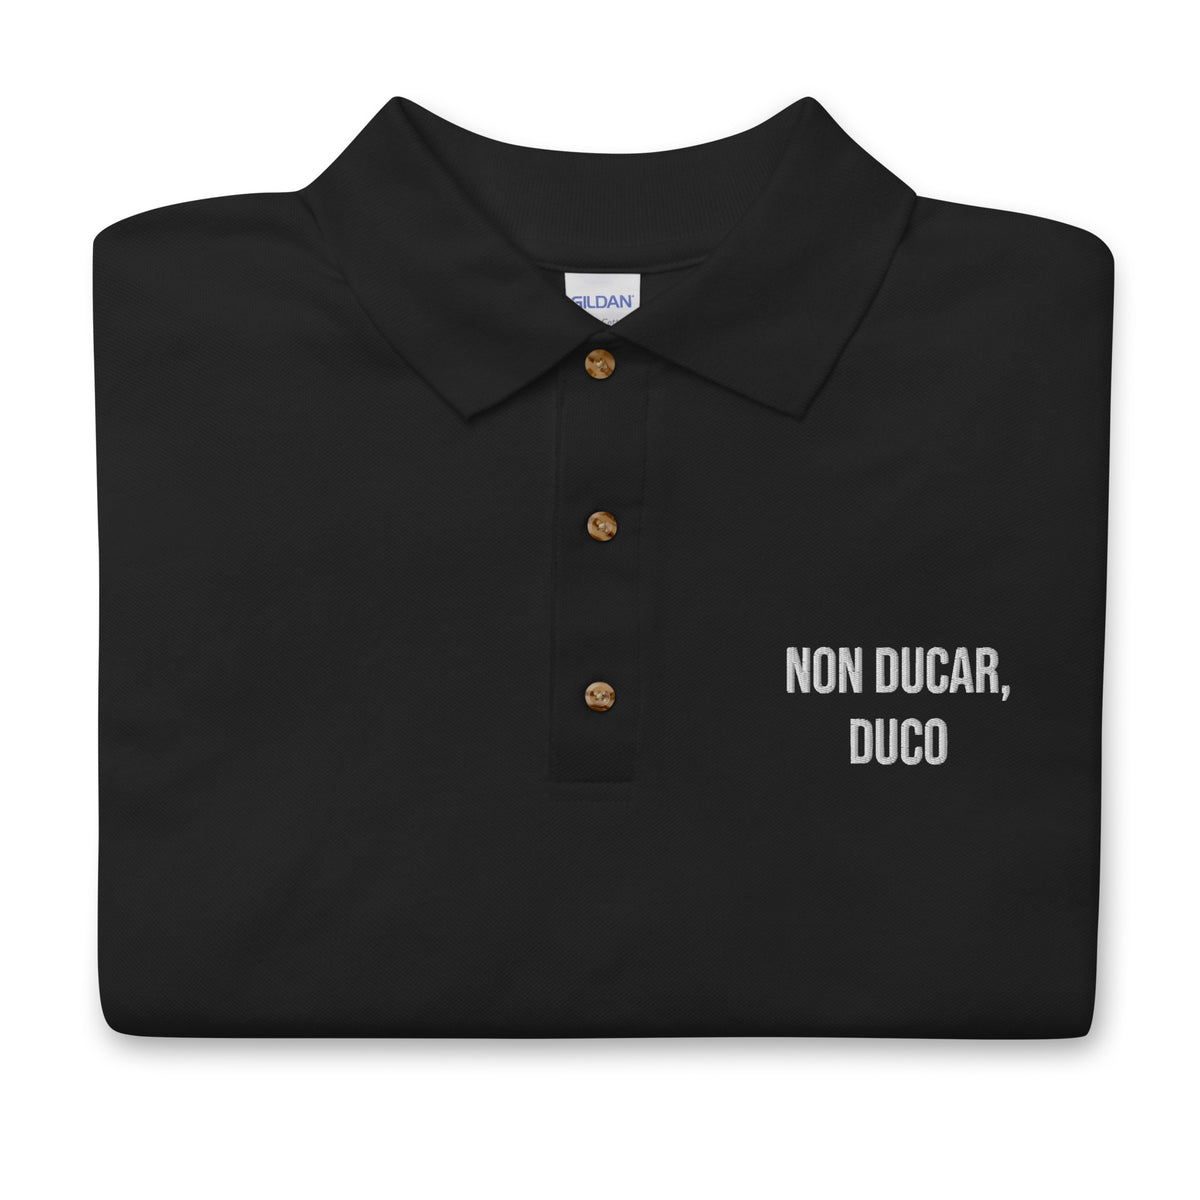 NON DUCAR DUCO (Latin I am not led, I lead) Embroidered Polo Shirt